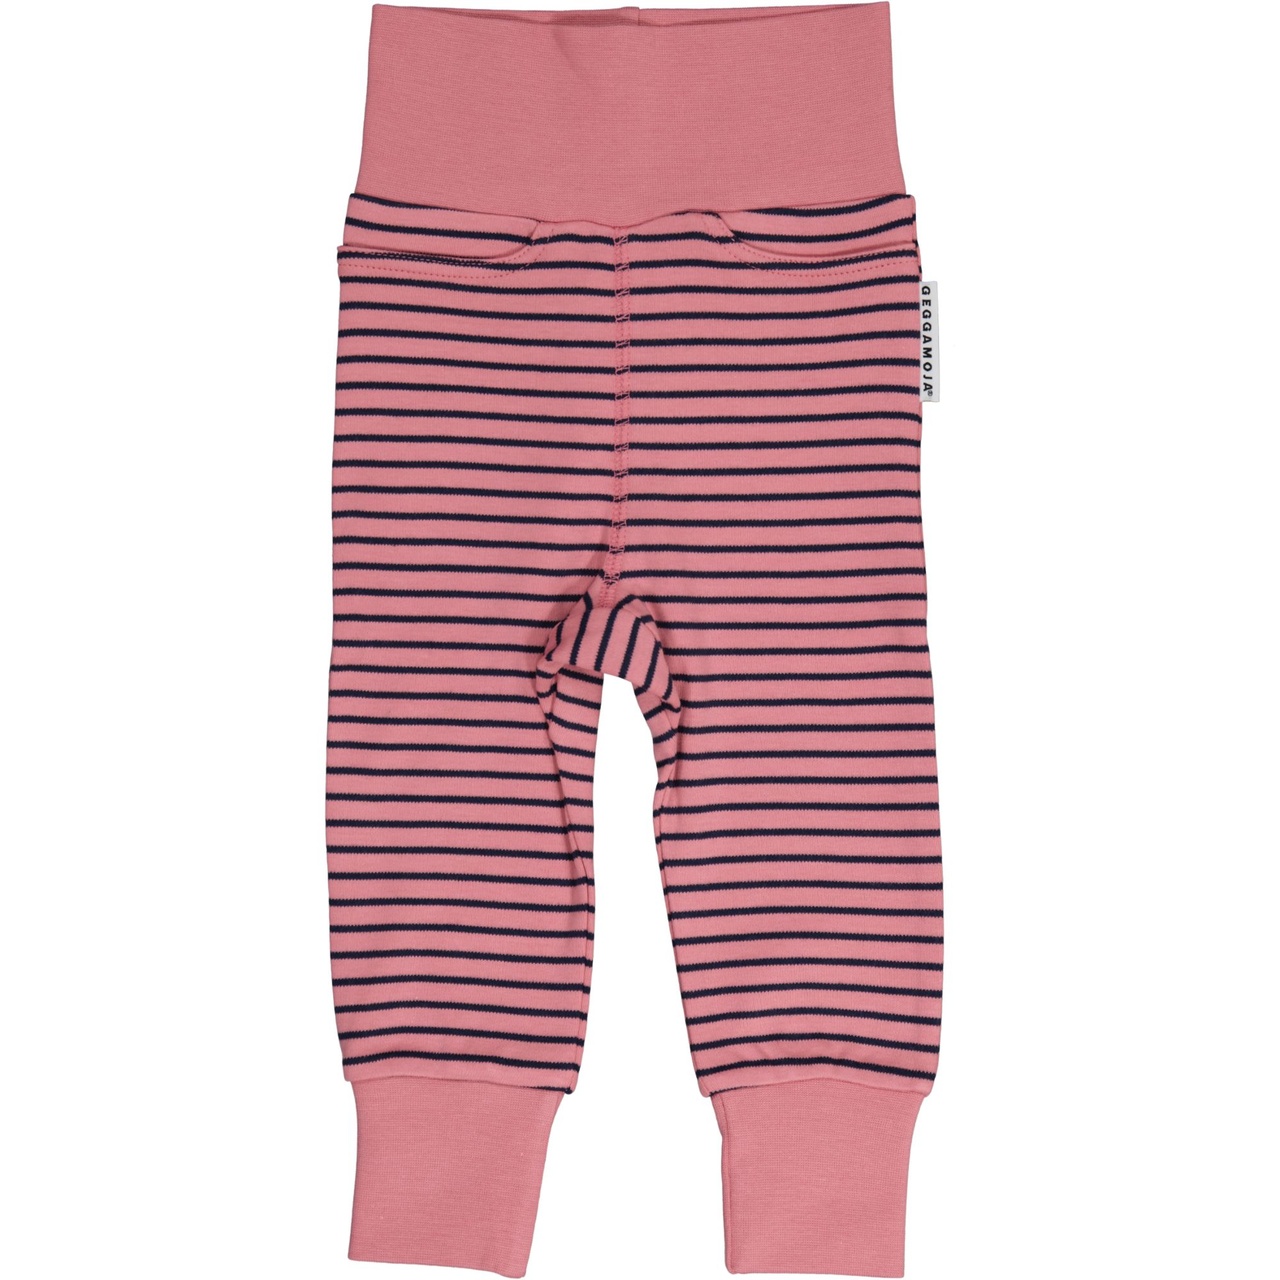 Vauvan housut vaaleanpunainen/laivastonsininen 74/80